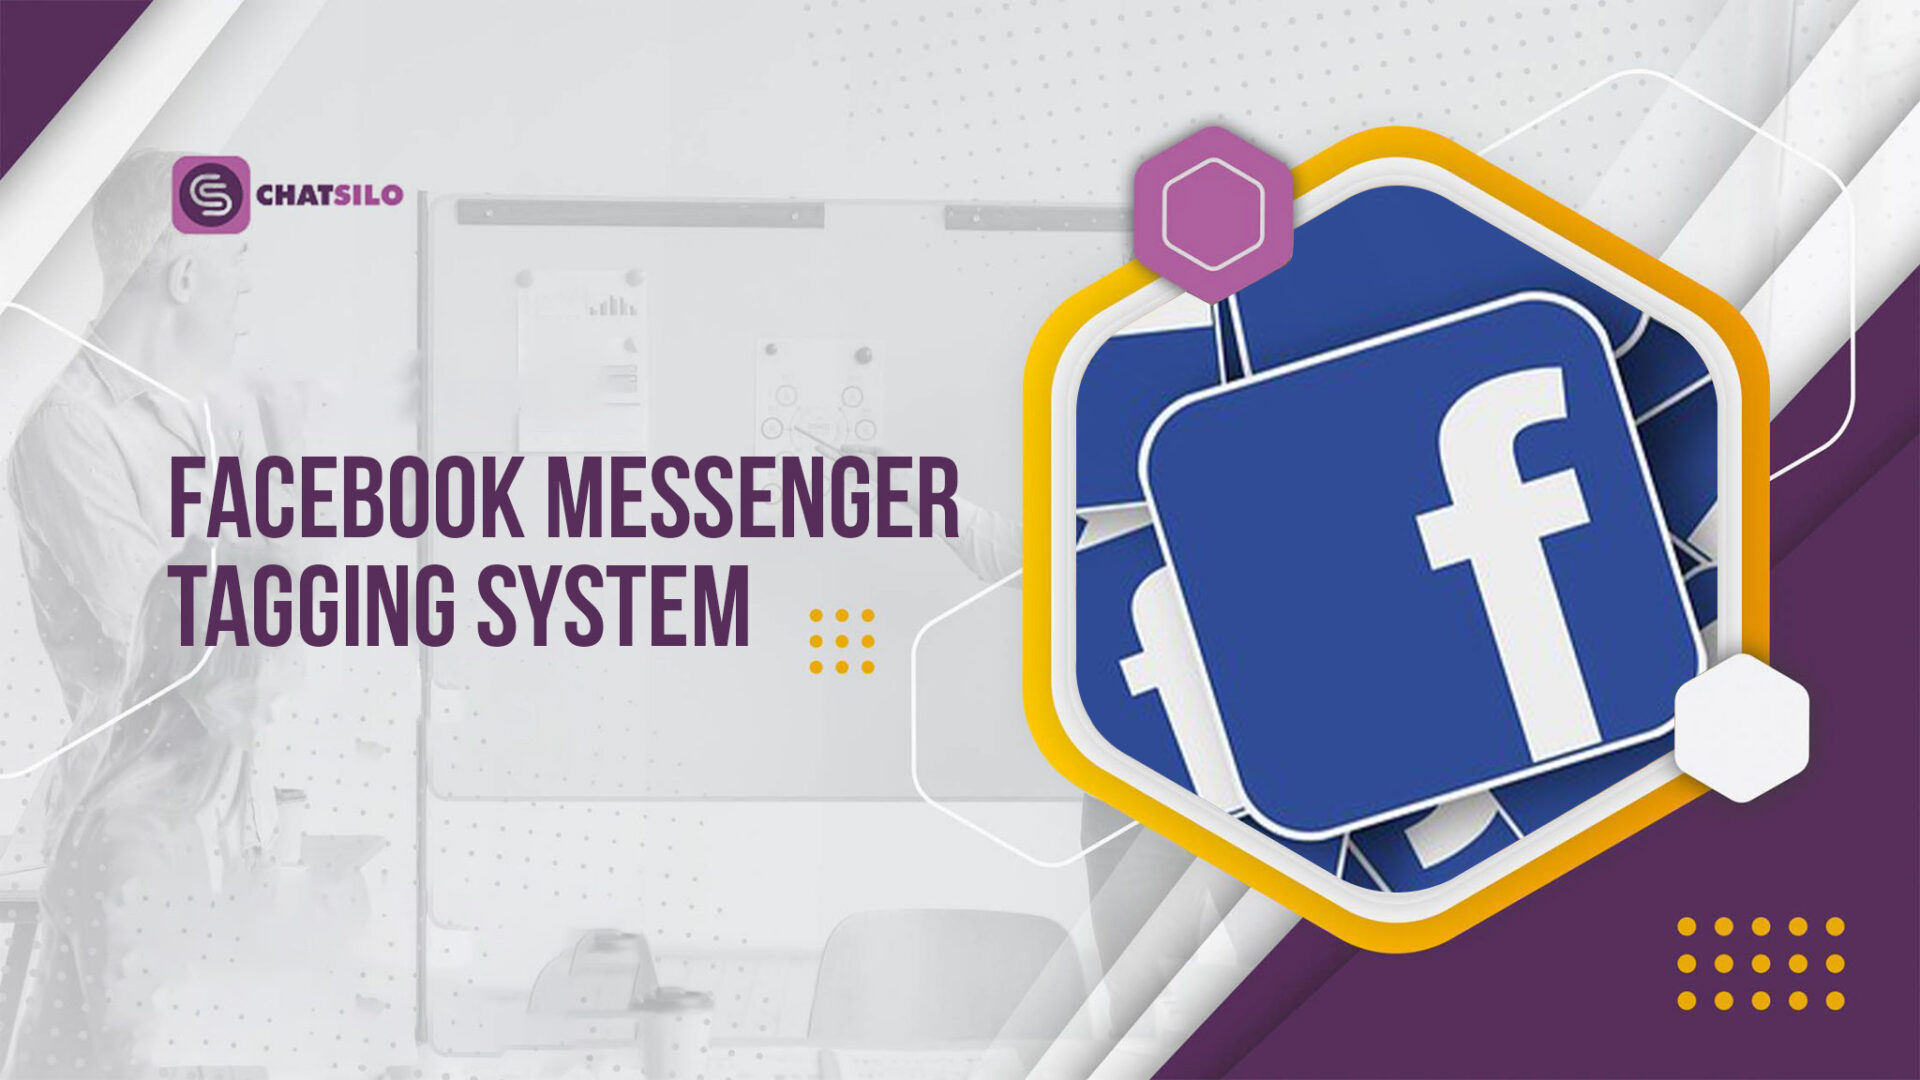 Facebook Messenger tagging system